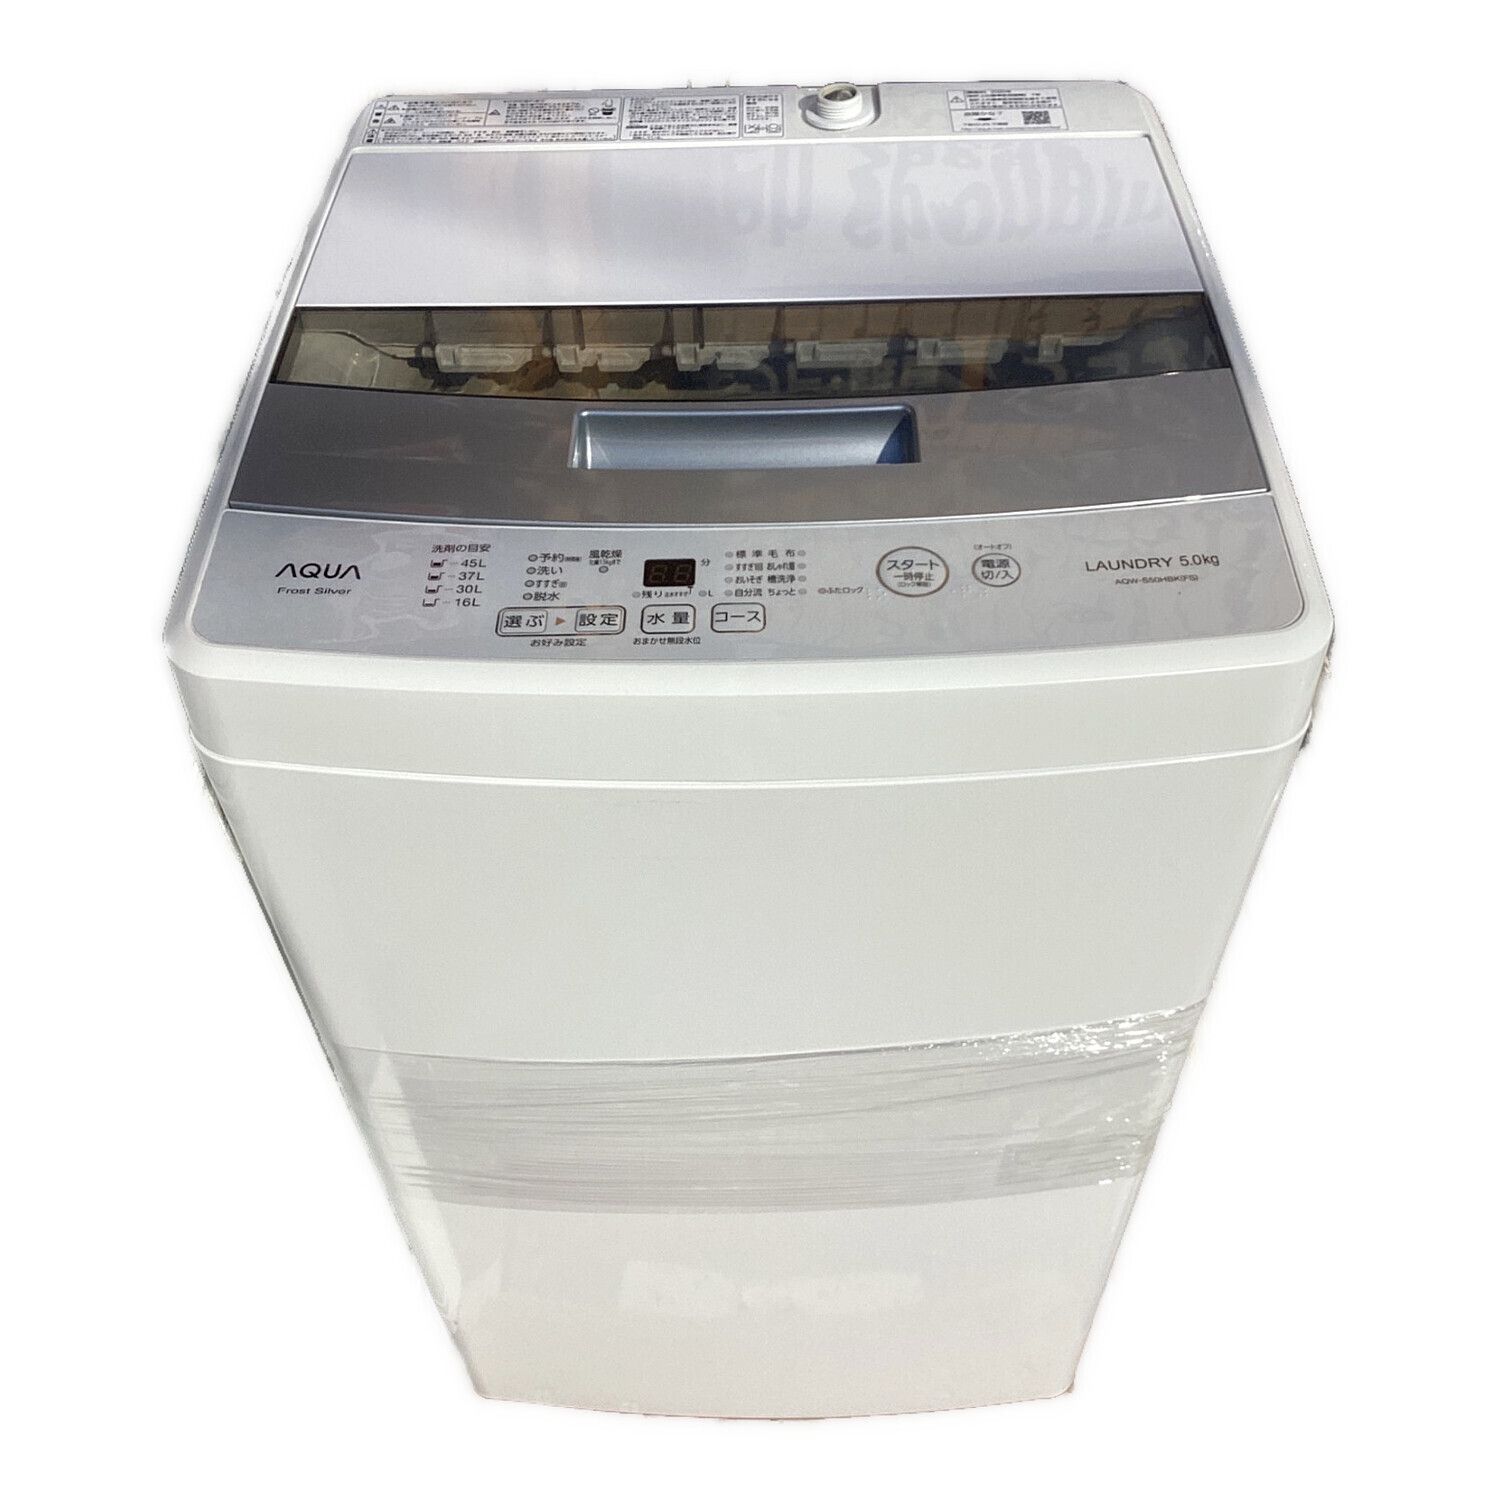 AQUA 5.0kg 全自動洗濯機 ホワイト AQW-S50E9(KW) - 生活家電